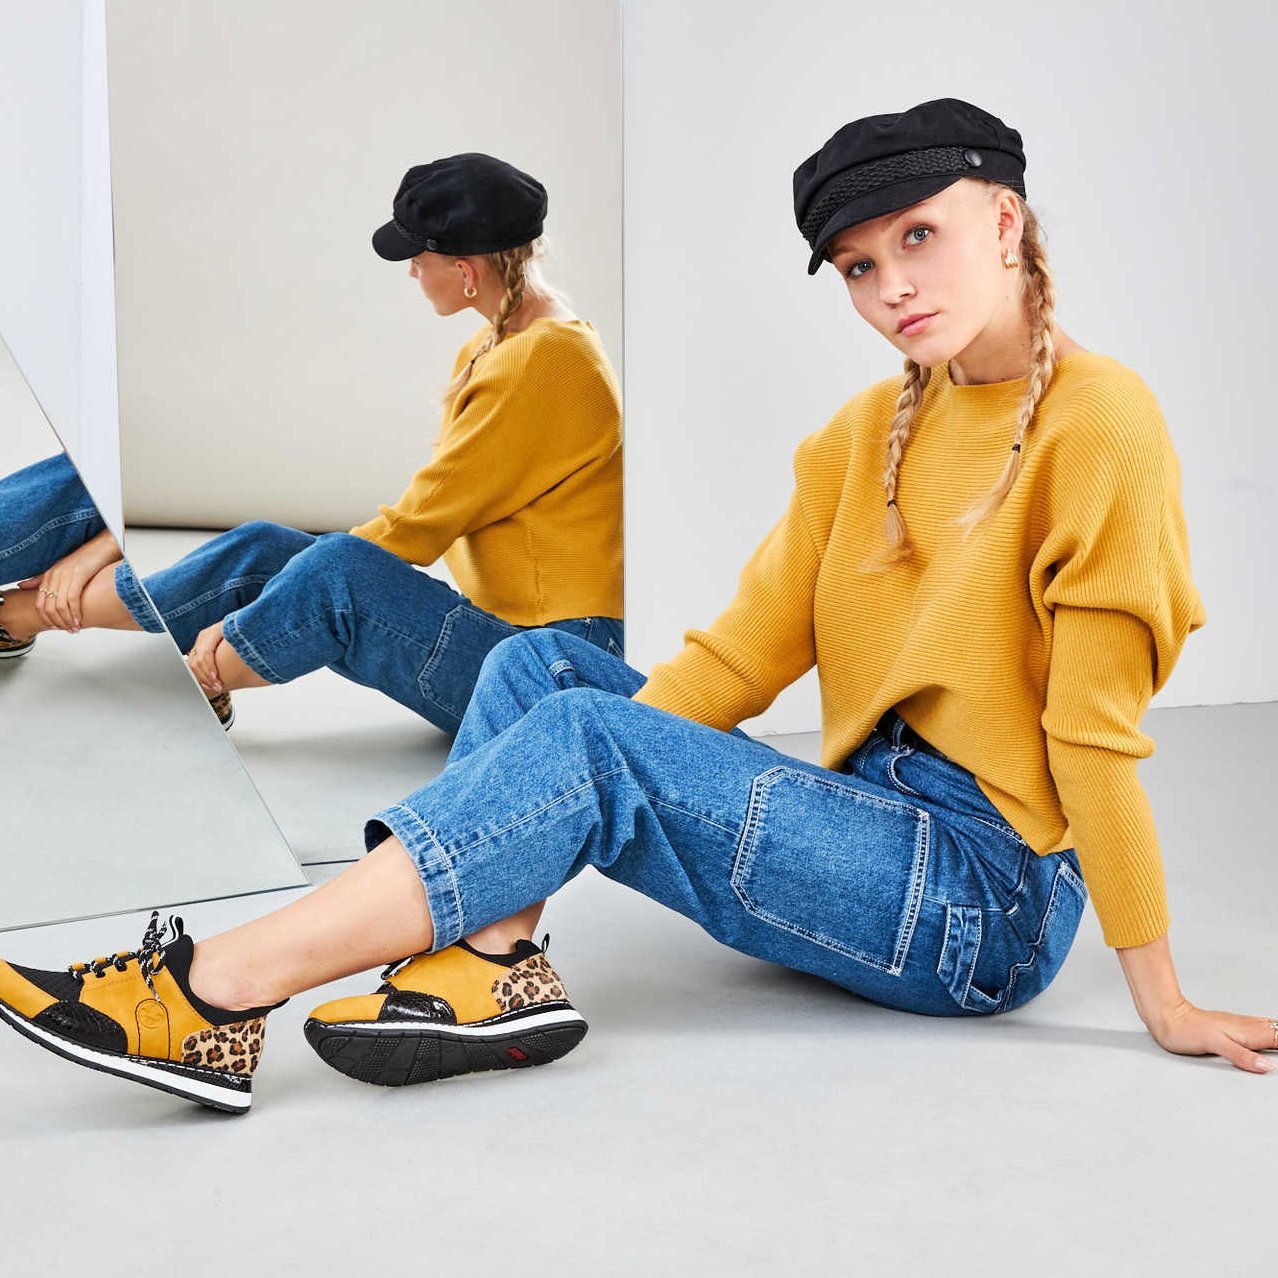 Eine junge Frau sitzt vor einem Spiegel und präsentiert ihre gelben Schuhe